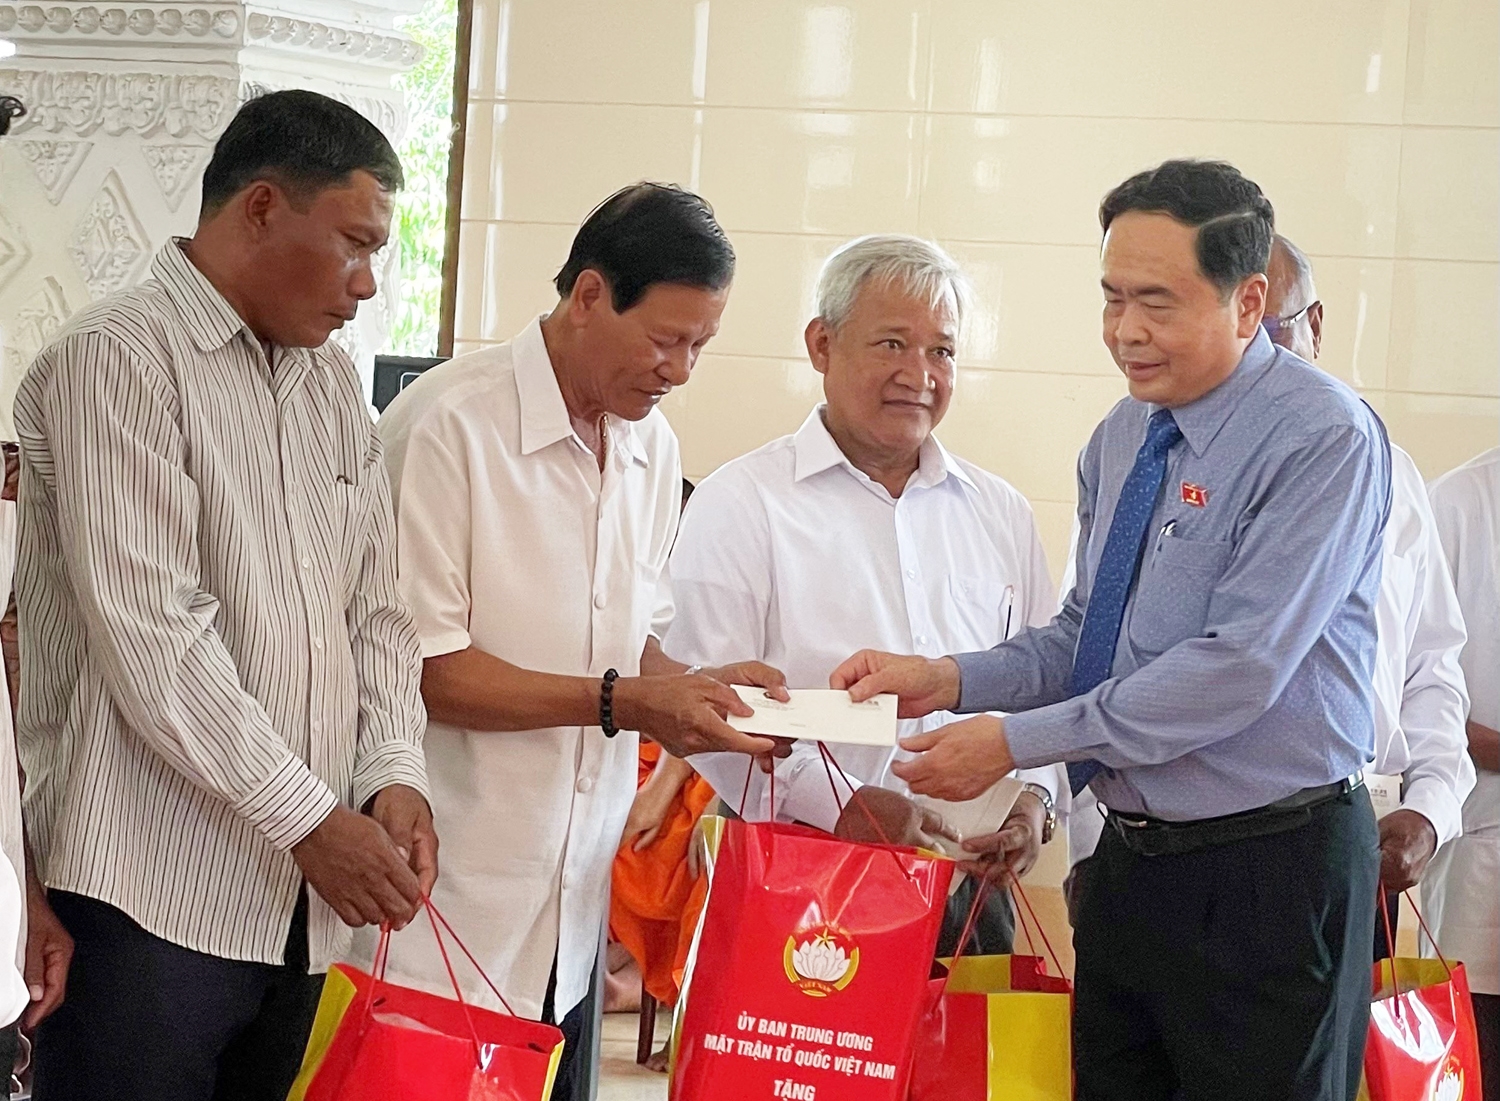 Phó Chủ tịch Thường trực Quốc hội Trần Thanh Mẫn đã tặng 52 phần quà cho Người uy tín tiêu biểu là người dân tộc Khmer của TP. Cần Thơ